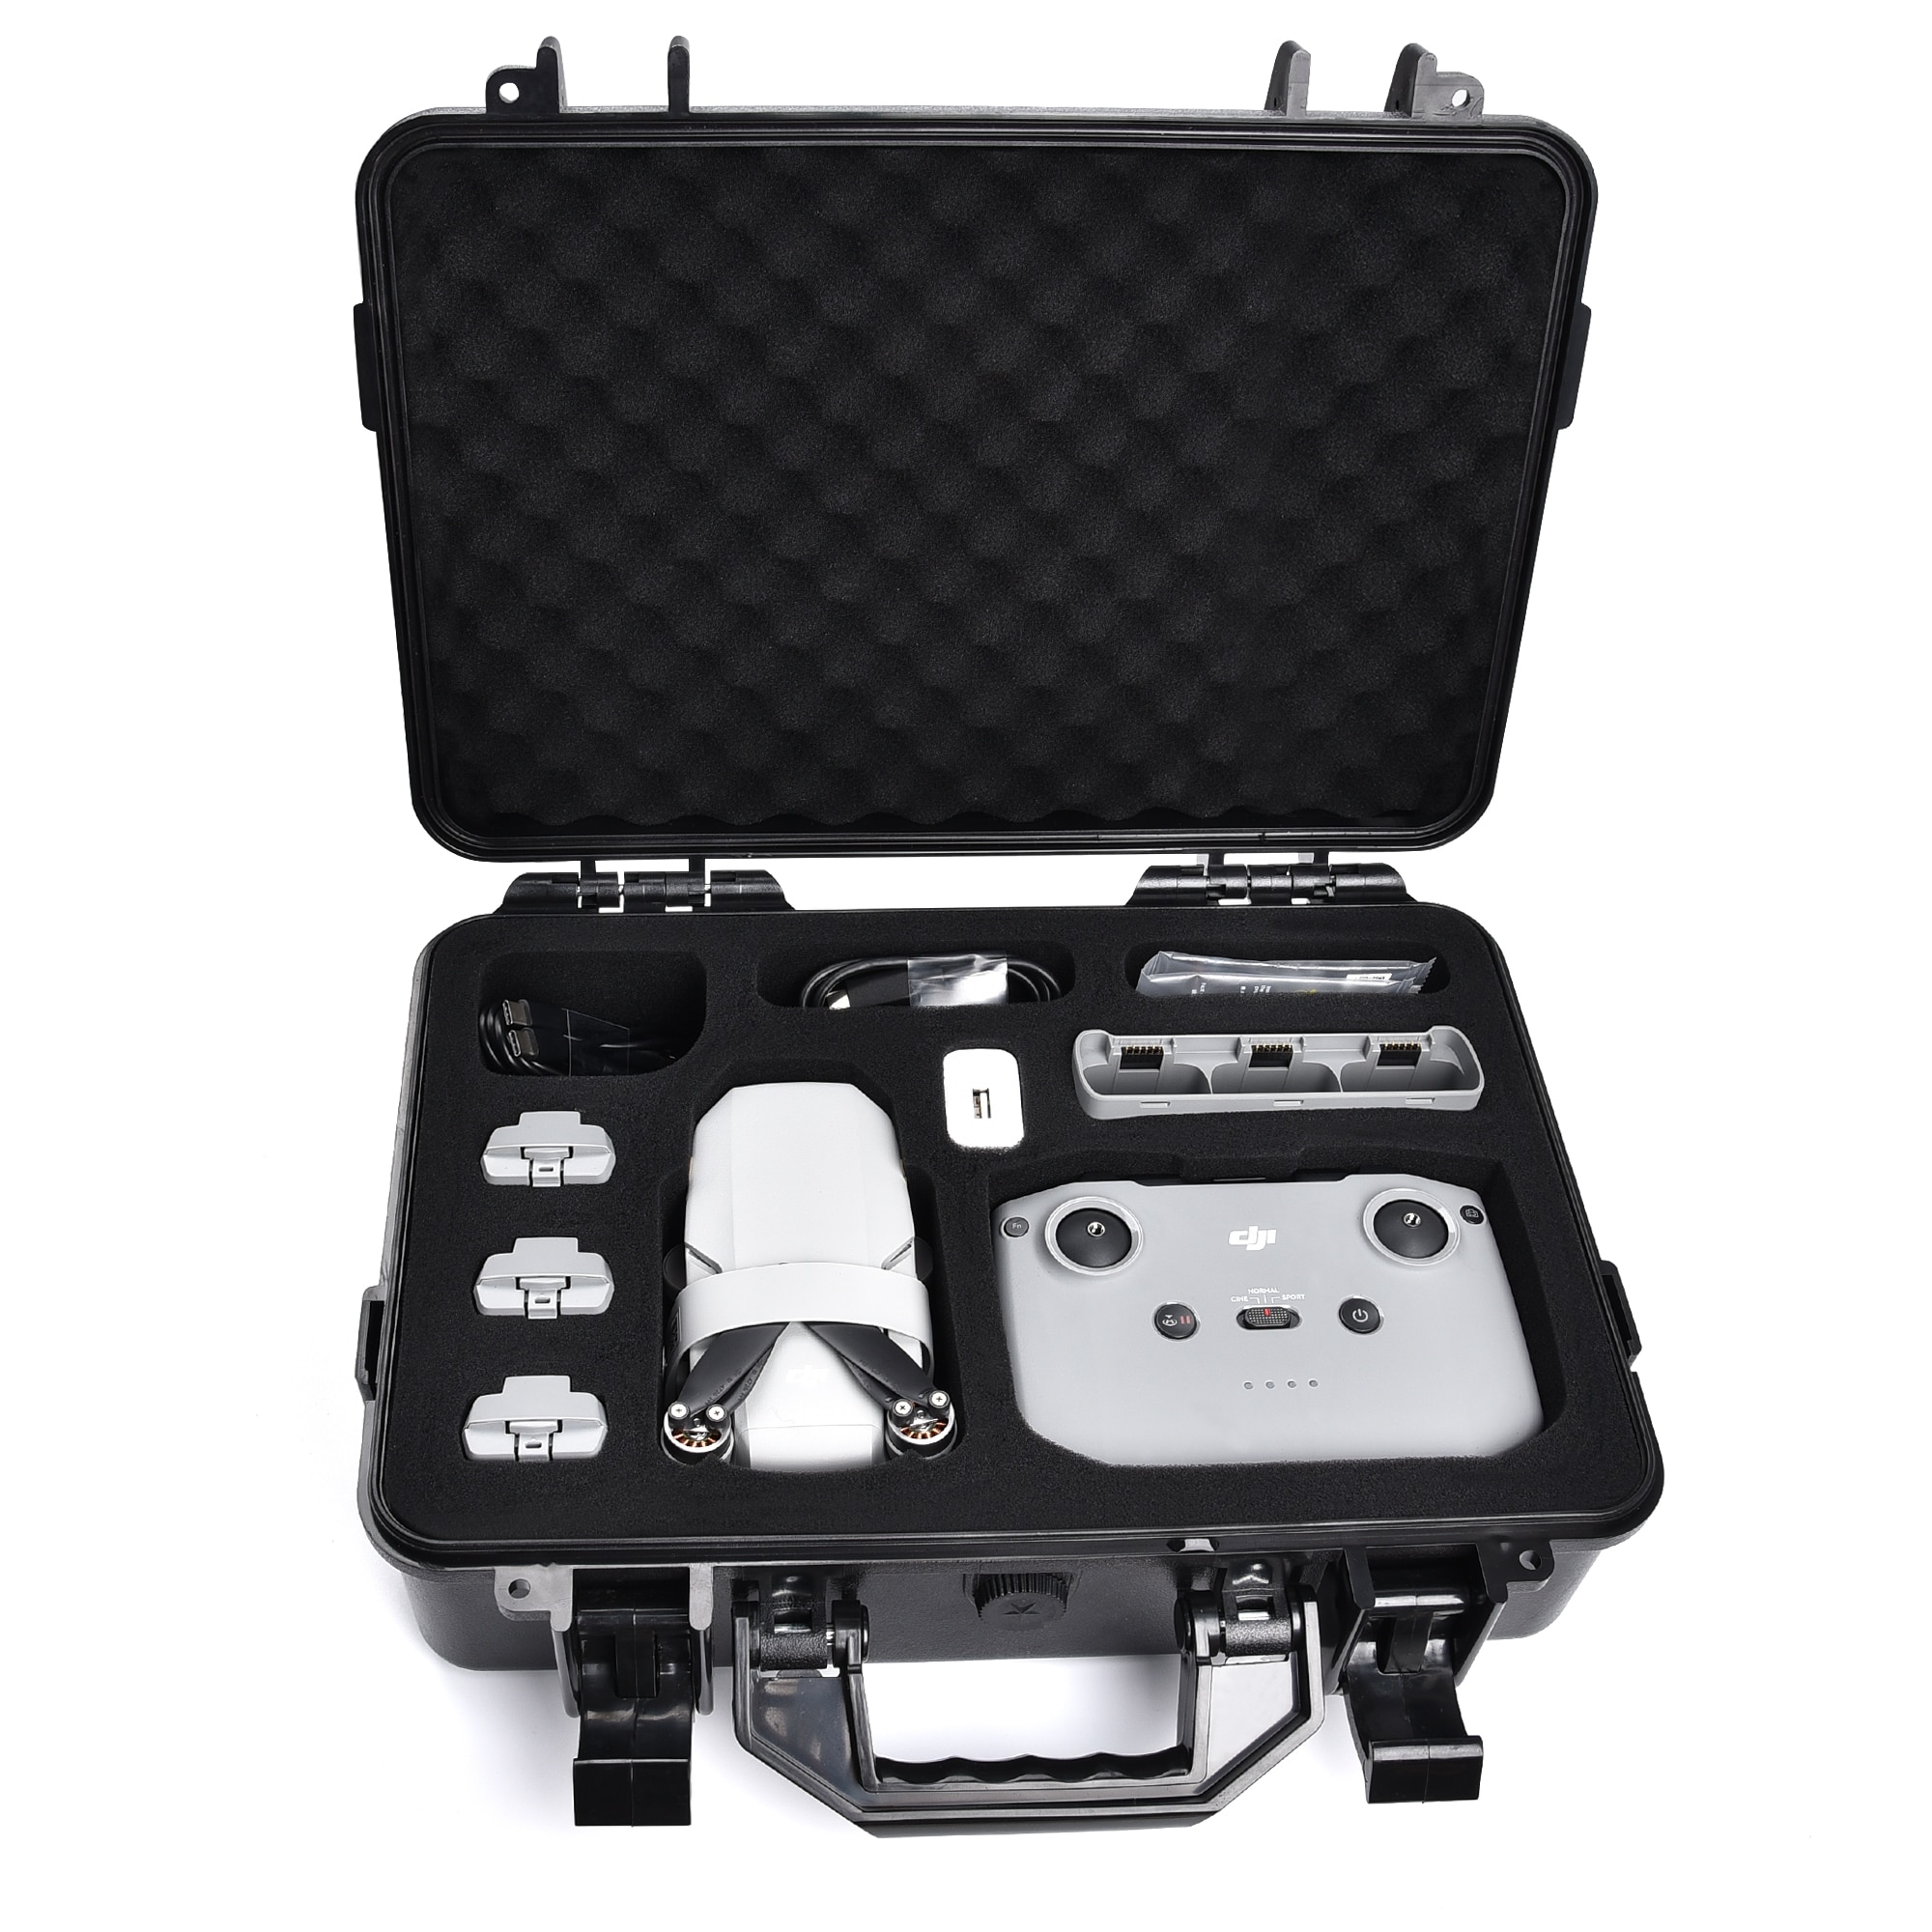 Til dji mini 2 eksplosionssikker bæretaske vandtæt kuffert håndtaske mavic mini 2 drone / contorller tilbehør opbevaringsetui